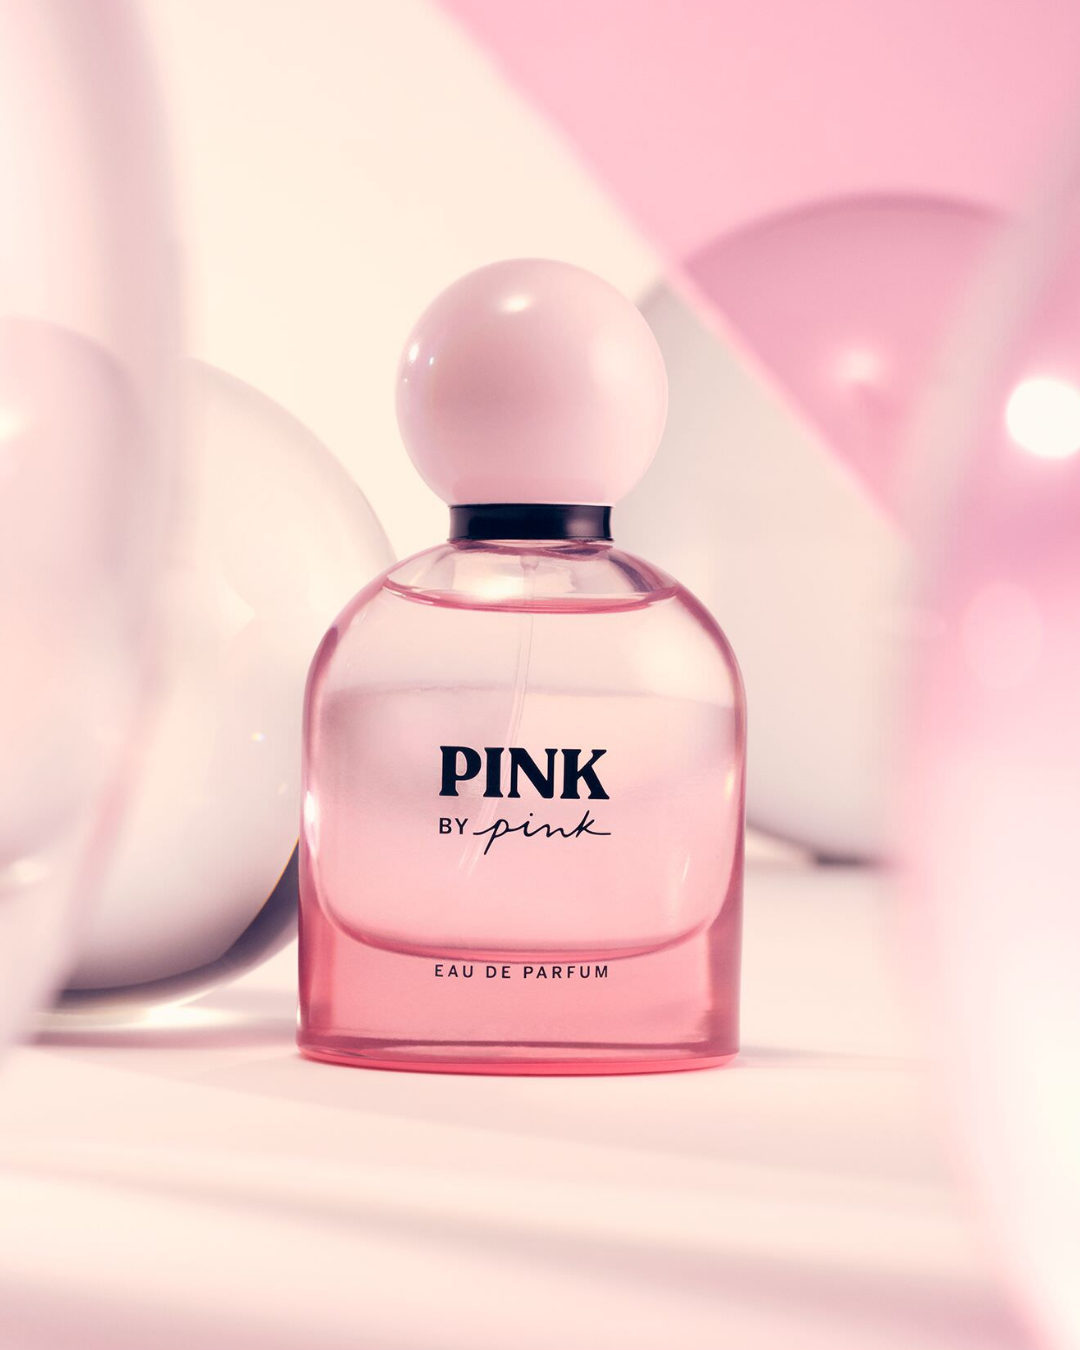 Pink Beach 2023 Victoria&#039;s Secret perfume - a novo fragrância  Feminino 2023